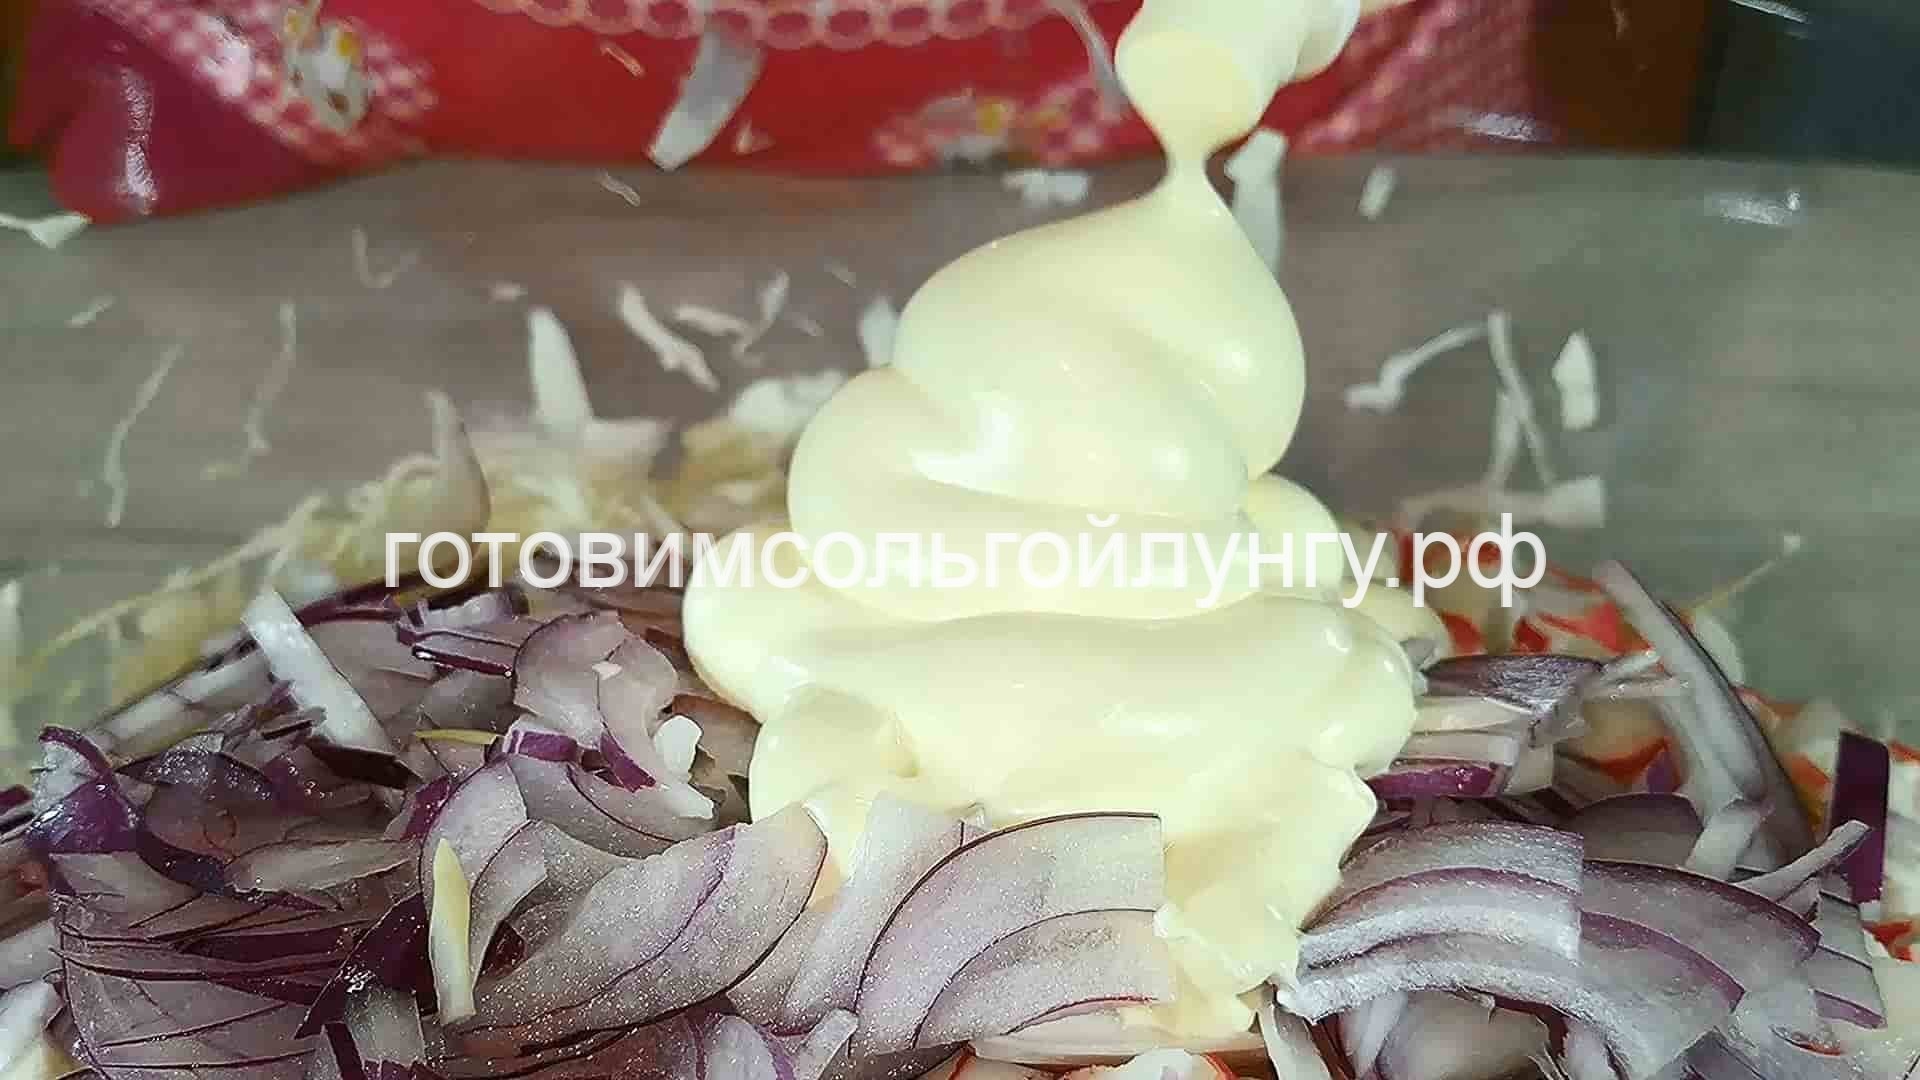 МЕГА простой, вкусный салат за 80 рублей из 3 ингредиентов